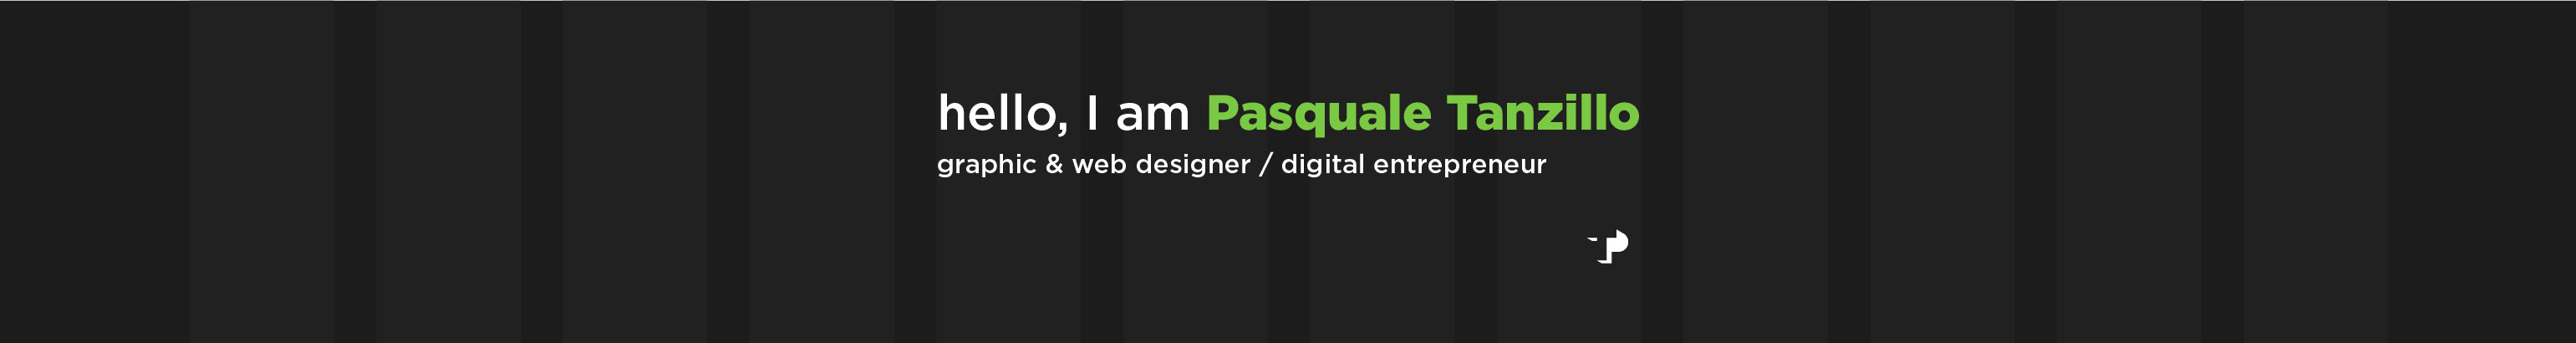 Pasquale Tanzillo's profile banner